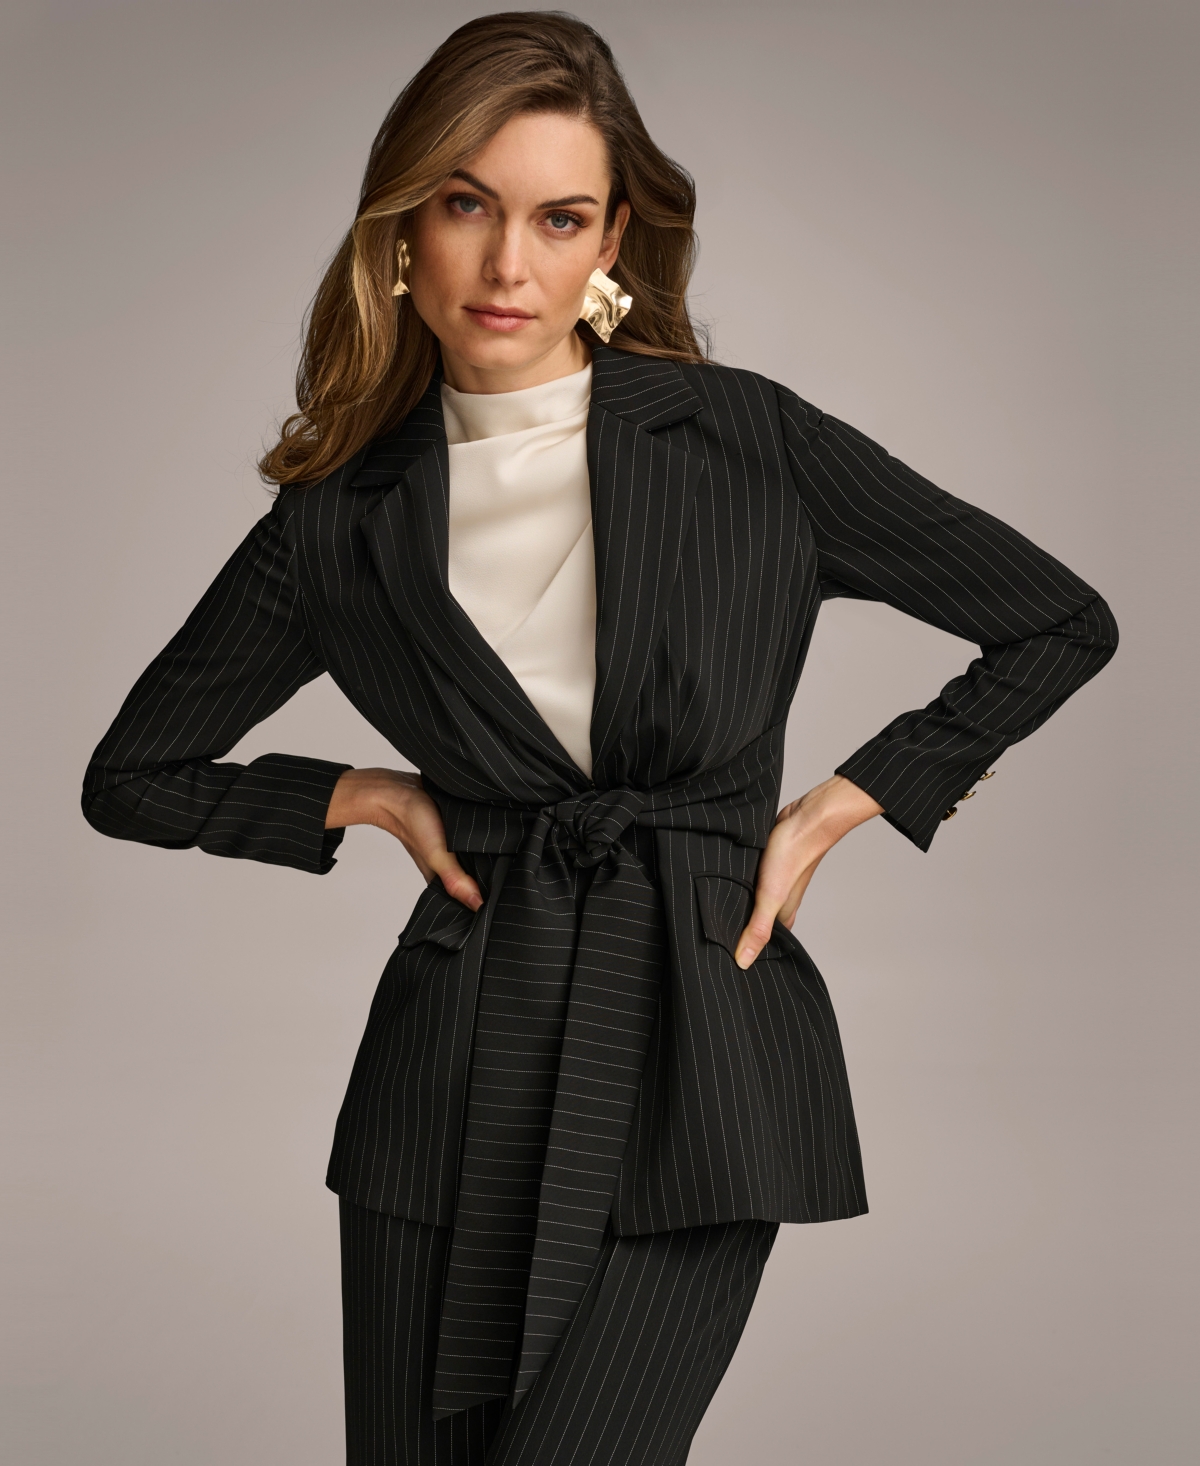 Women's Pinstripe Tie-Front Blazer - Black/Cream